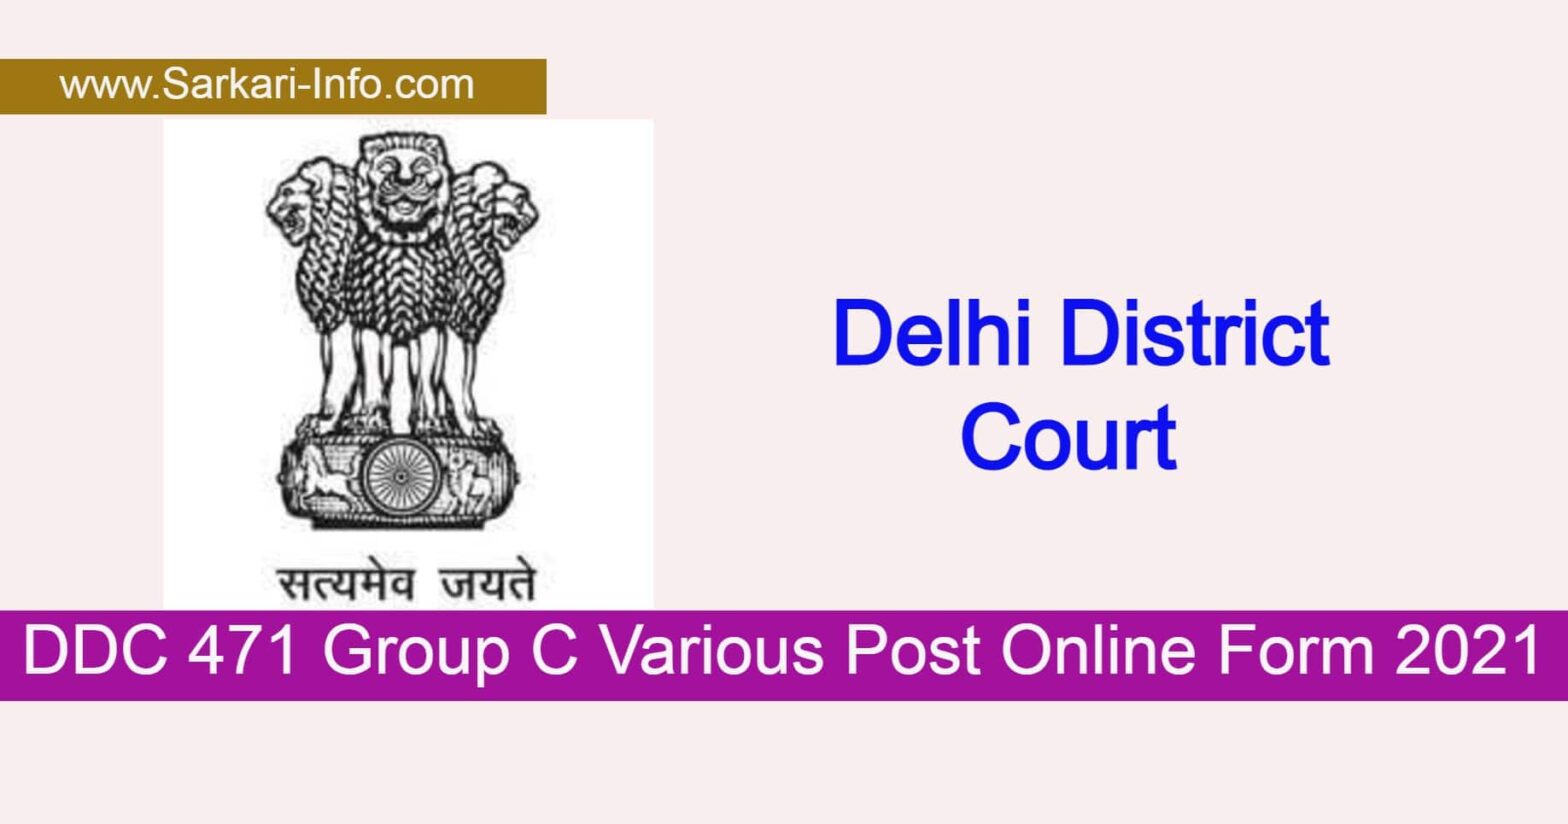 DDC Group C Various Post Online Form 2022 Delhi District Court